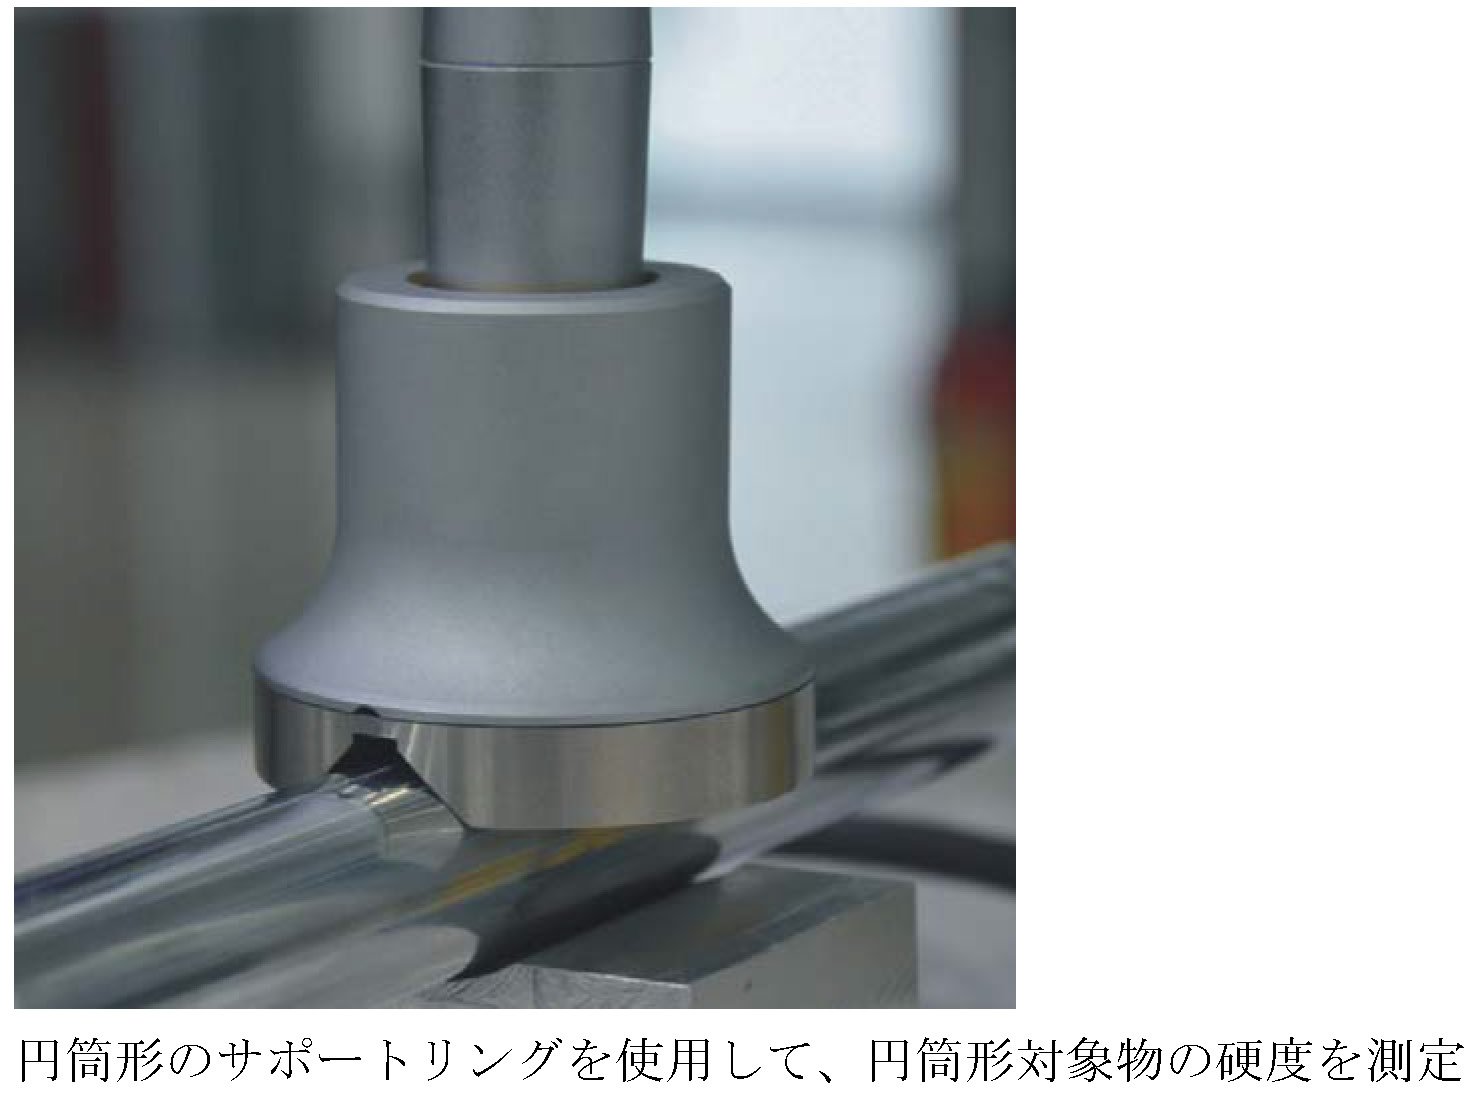 独特の素材 TIME 超音波硬度計 TIME5630 日本正規代理店商品 日本語サポート対応 1年保証